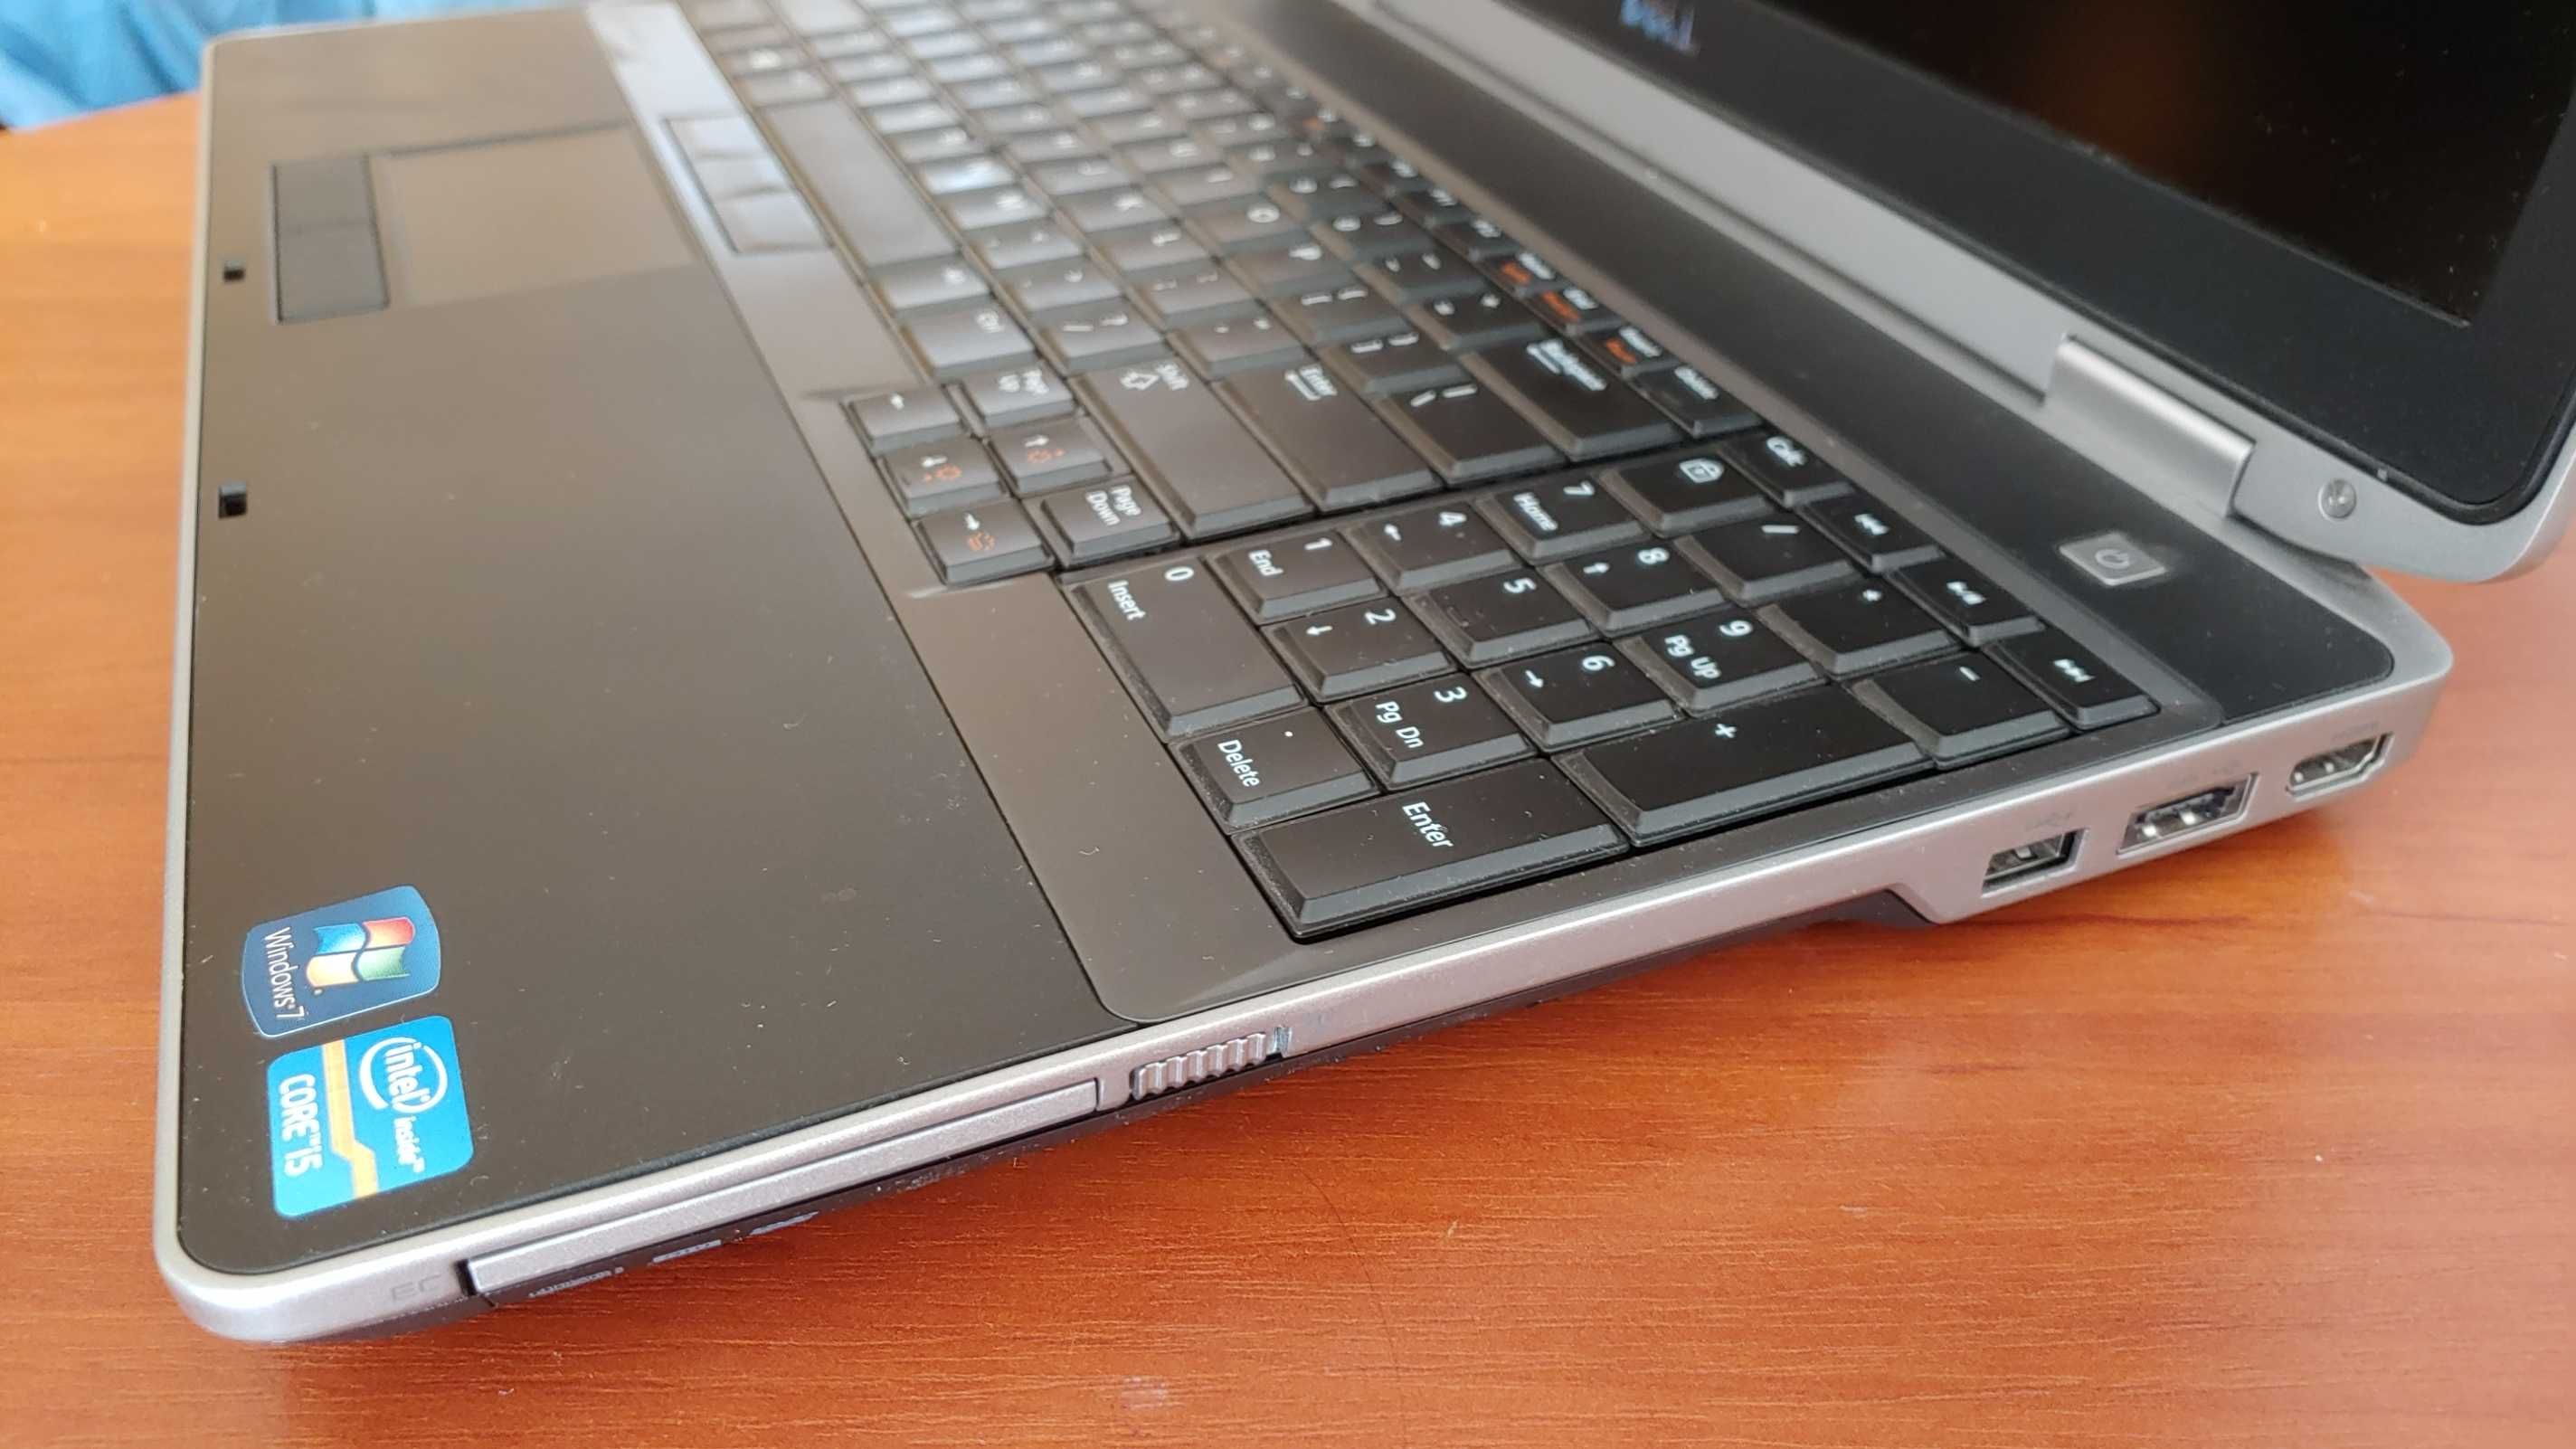 Ноутбук: Intel i5-3320m, 4ядра, ОЗУ 8Гб, збільшена батарея,екран 15.6"